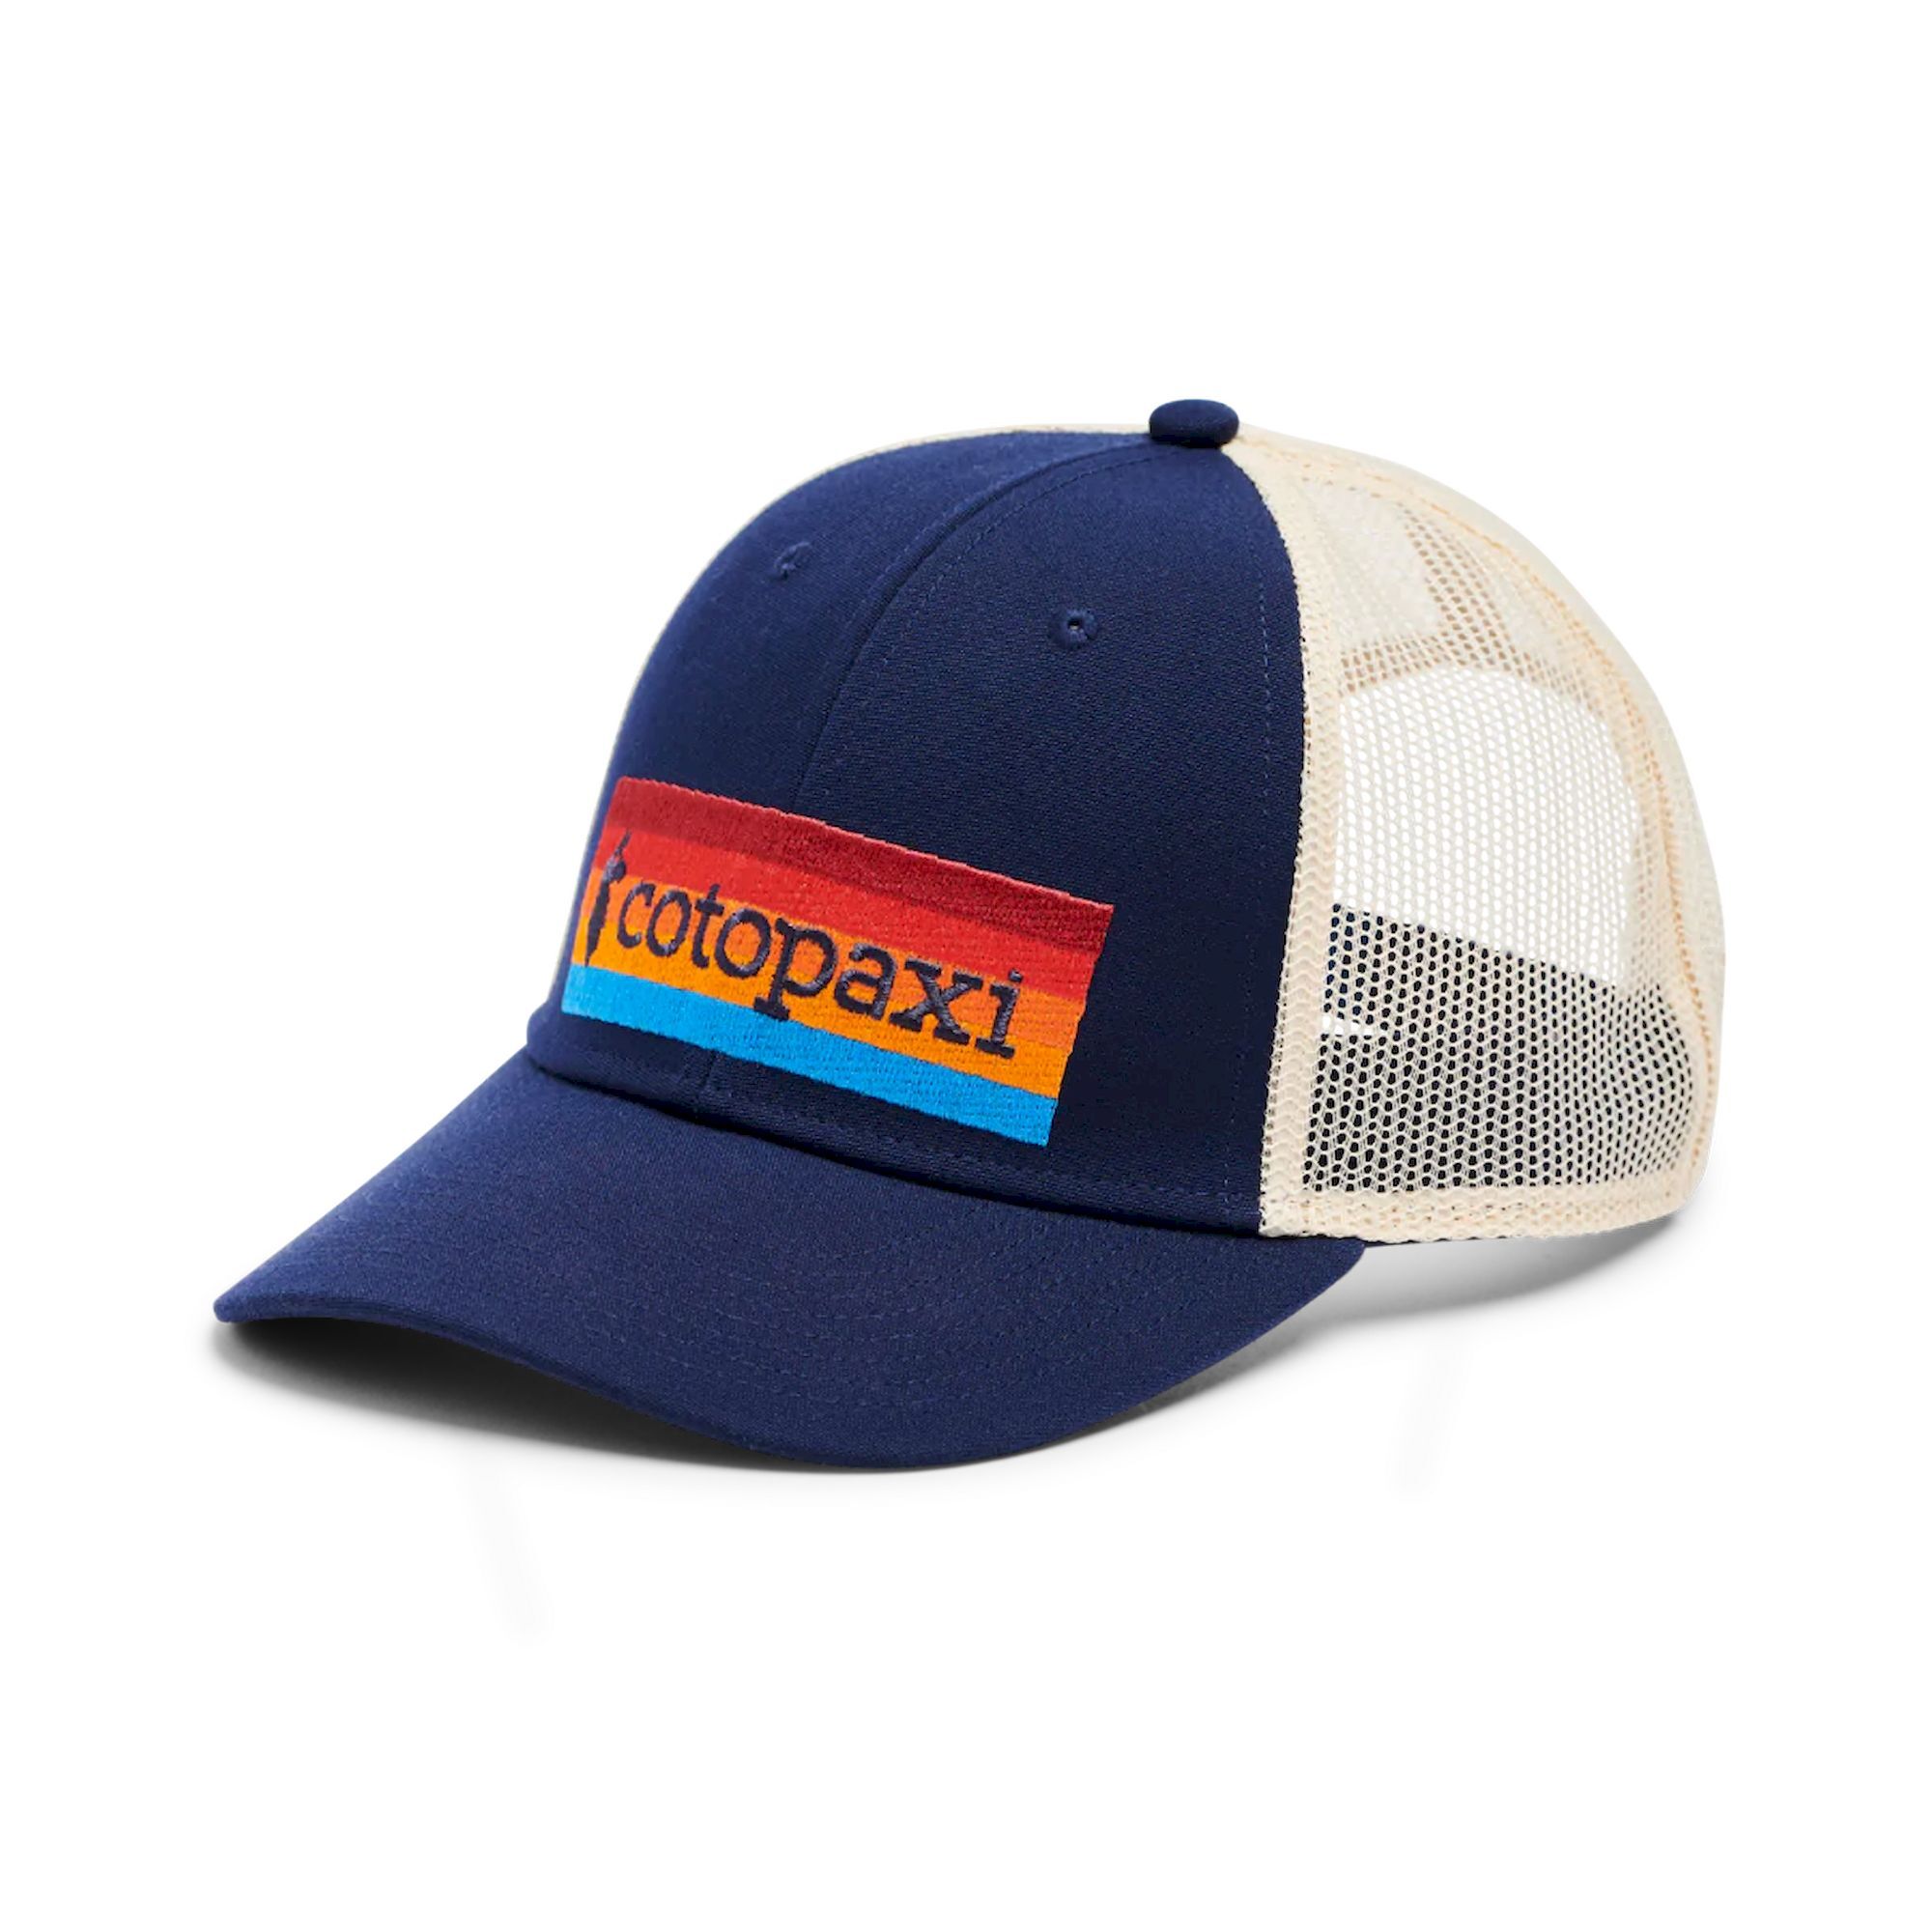 Cotopaxi On the Horizon Trucker Hat - Cap | Hardloop